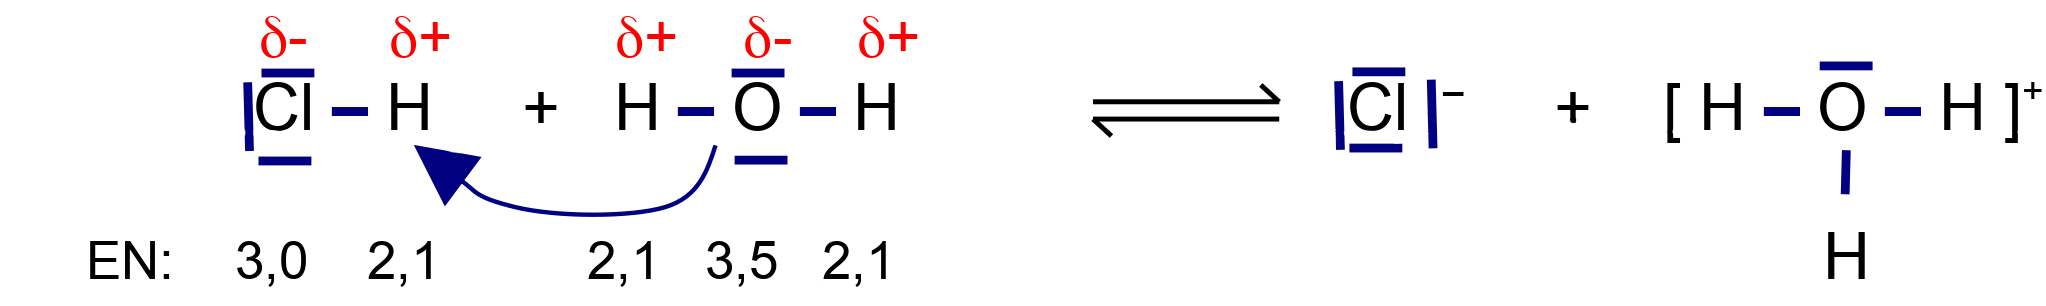 Protolyse von HCl mit H2O in Strukturformeln